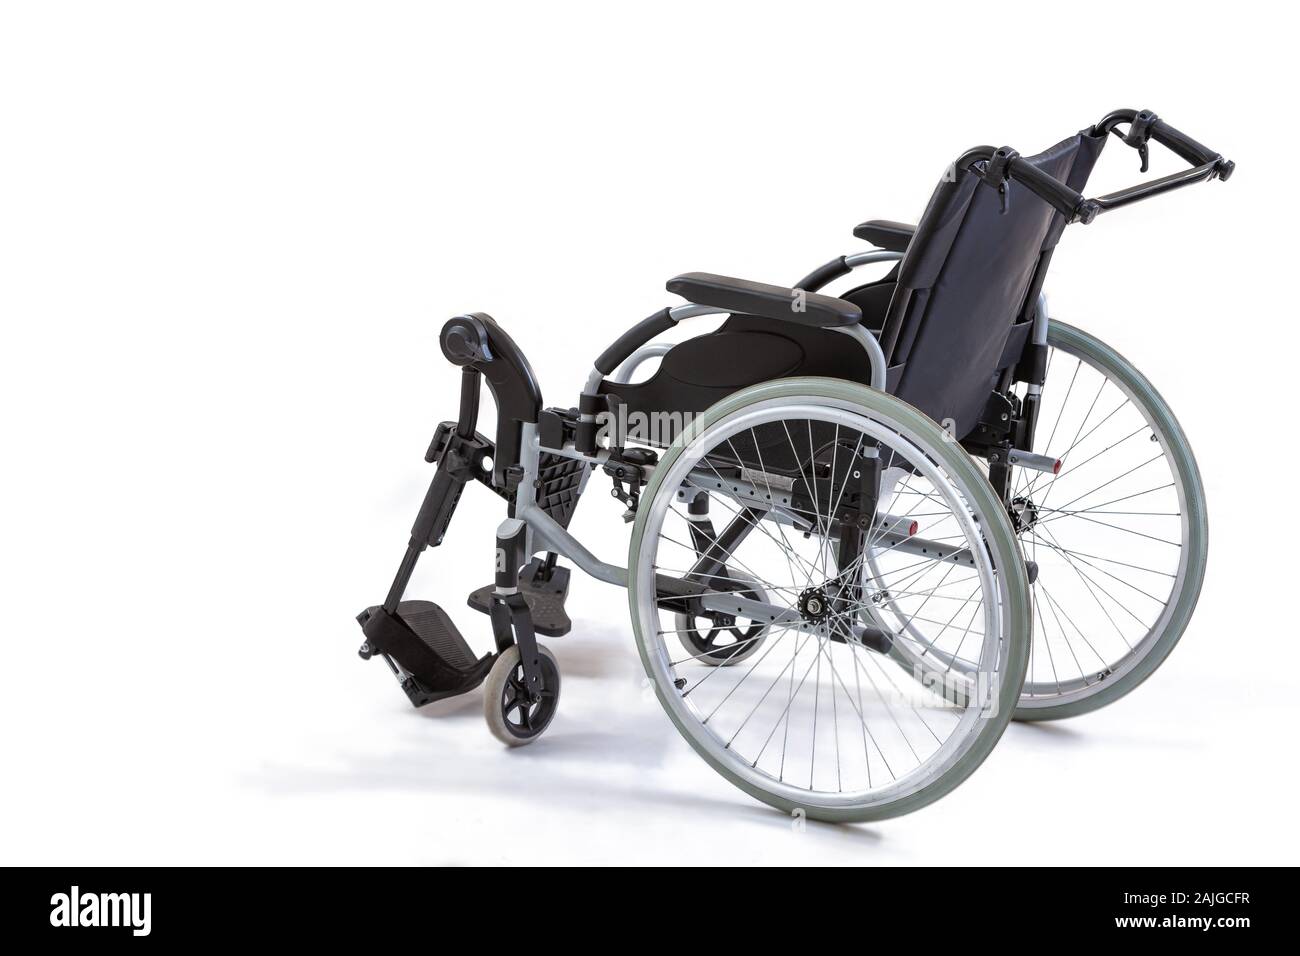 Bild der Rollstuhl auf weißem Hintergrund Stockfoto